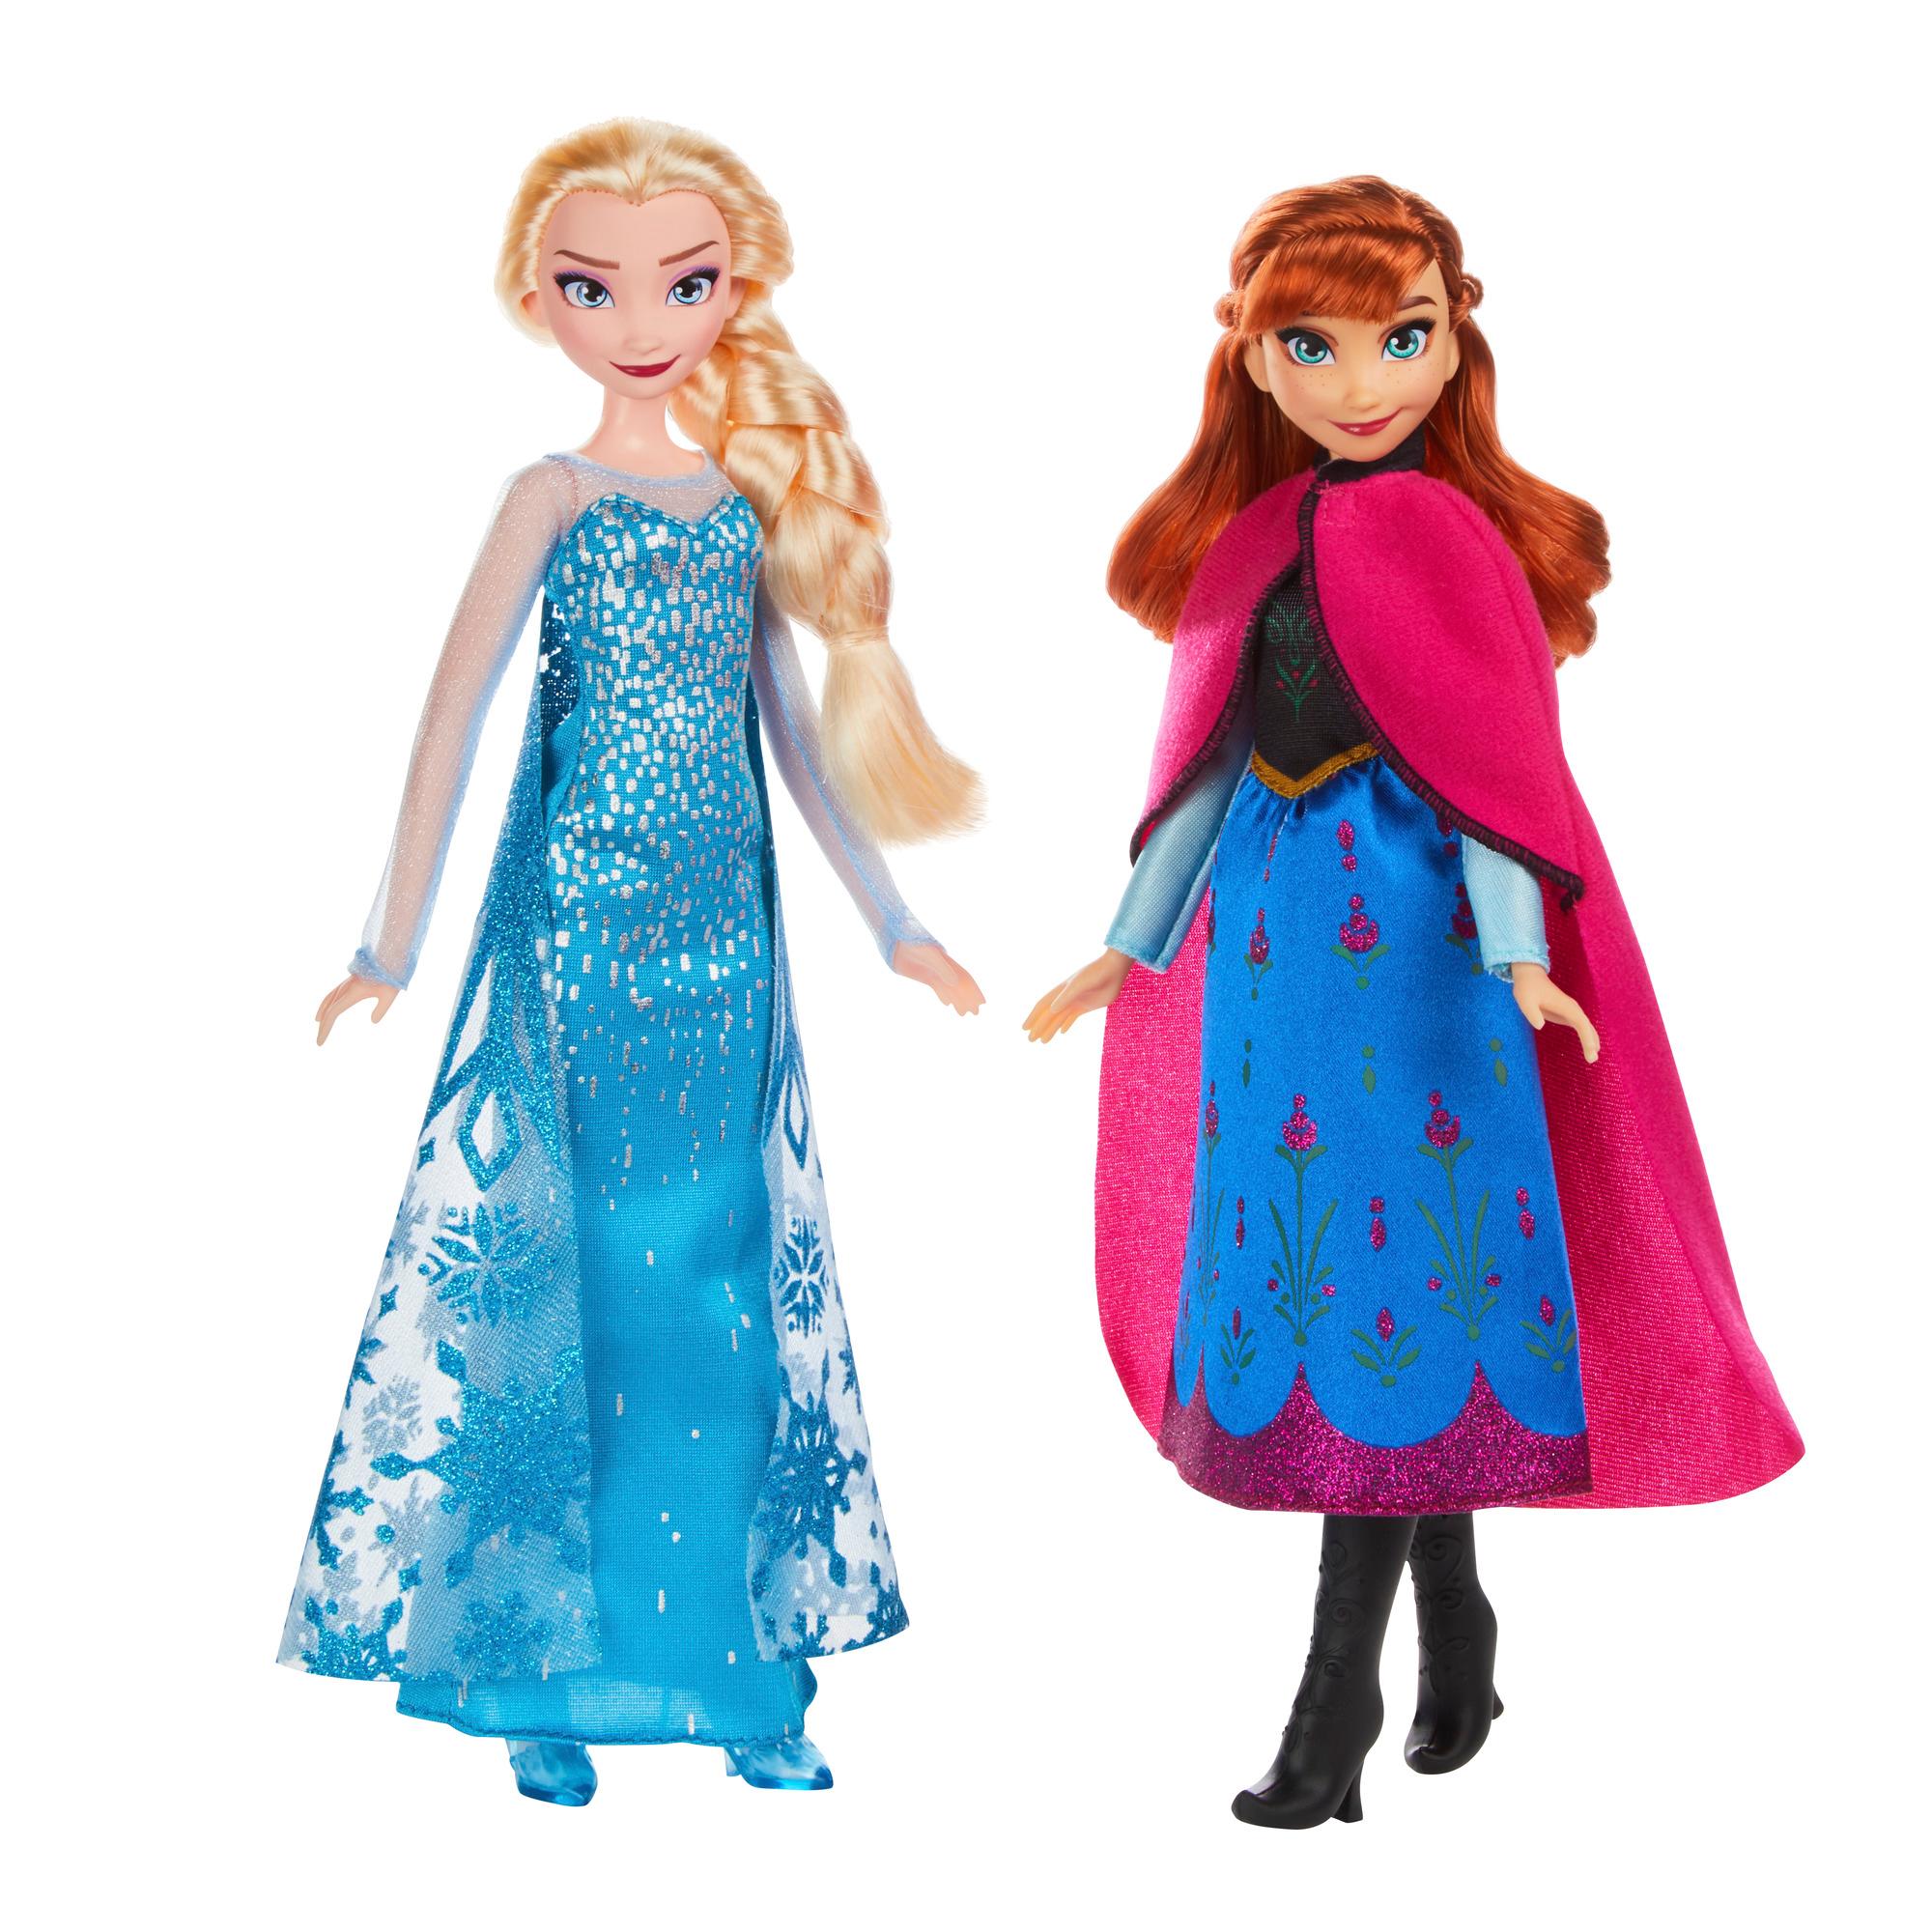 Frozen Disney Classic Fashion Elsa and Anna Dolls NIB 